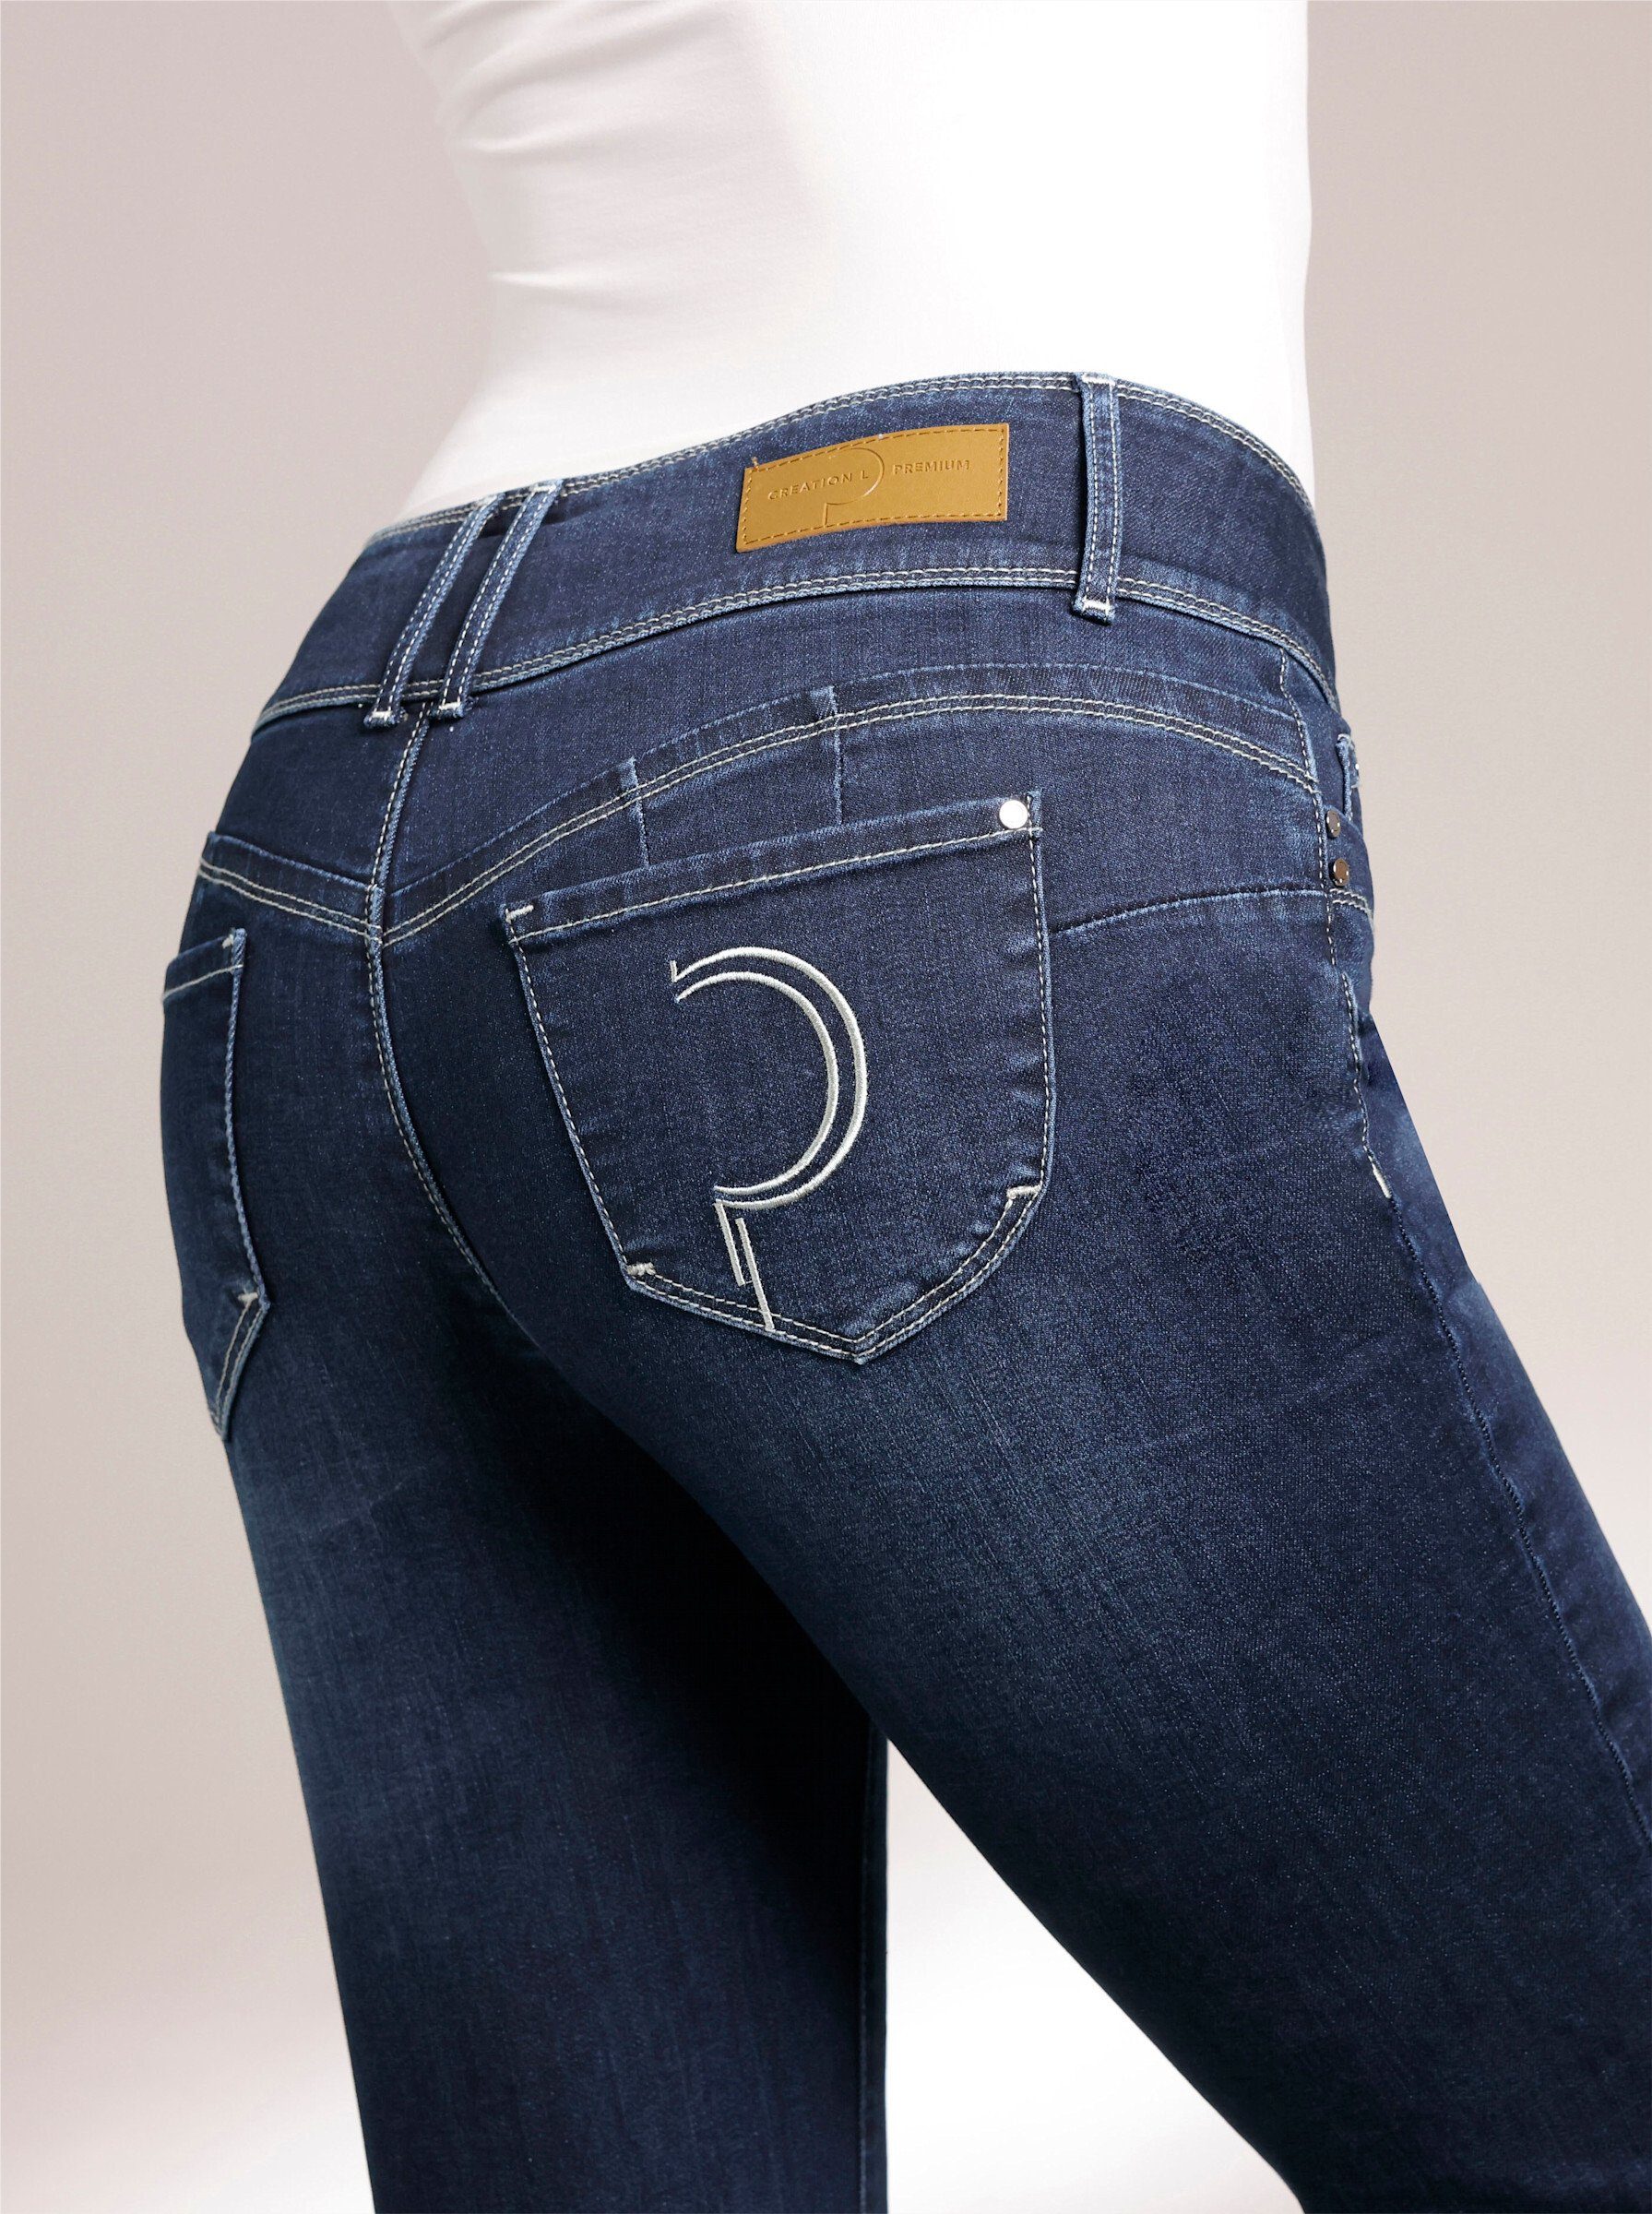 L Bequeme Jeans creation